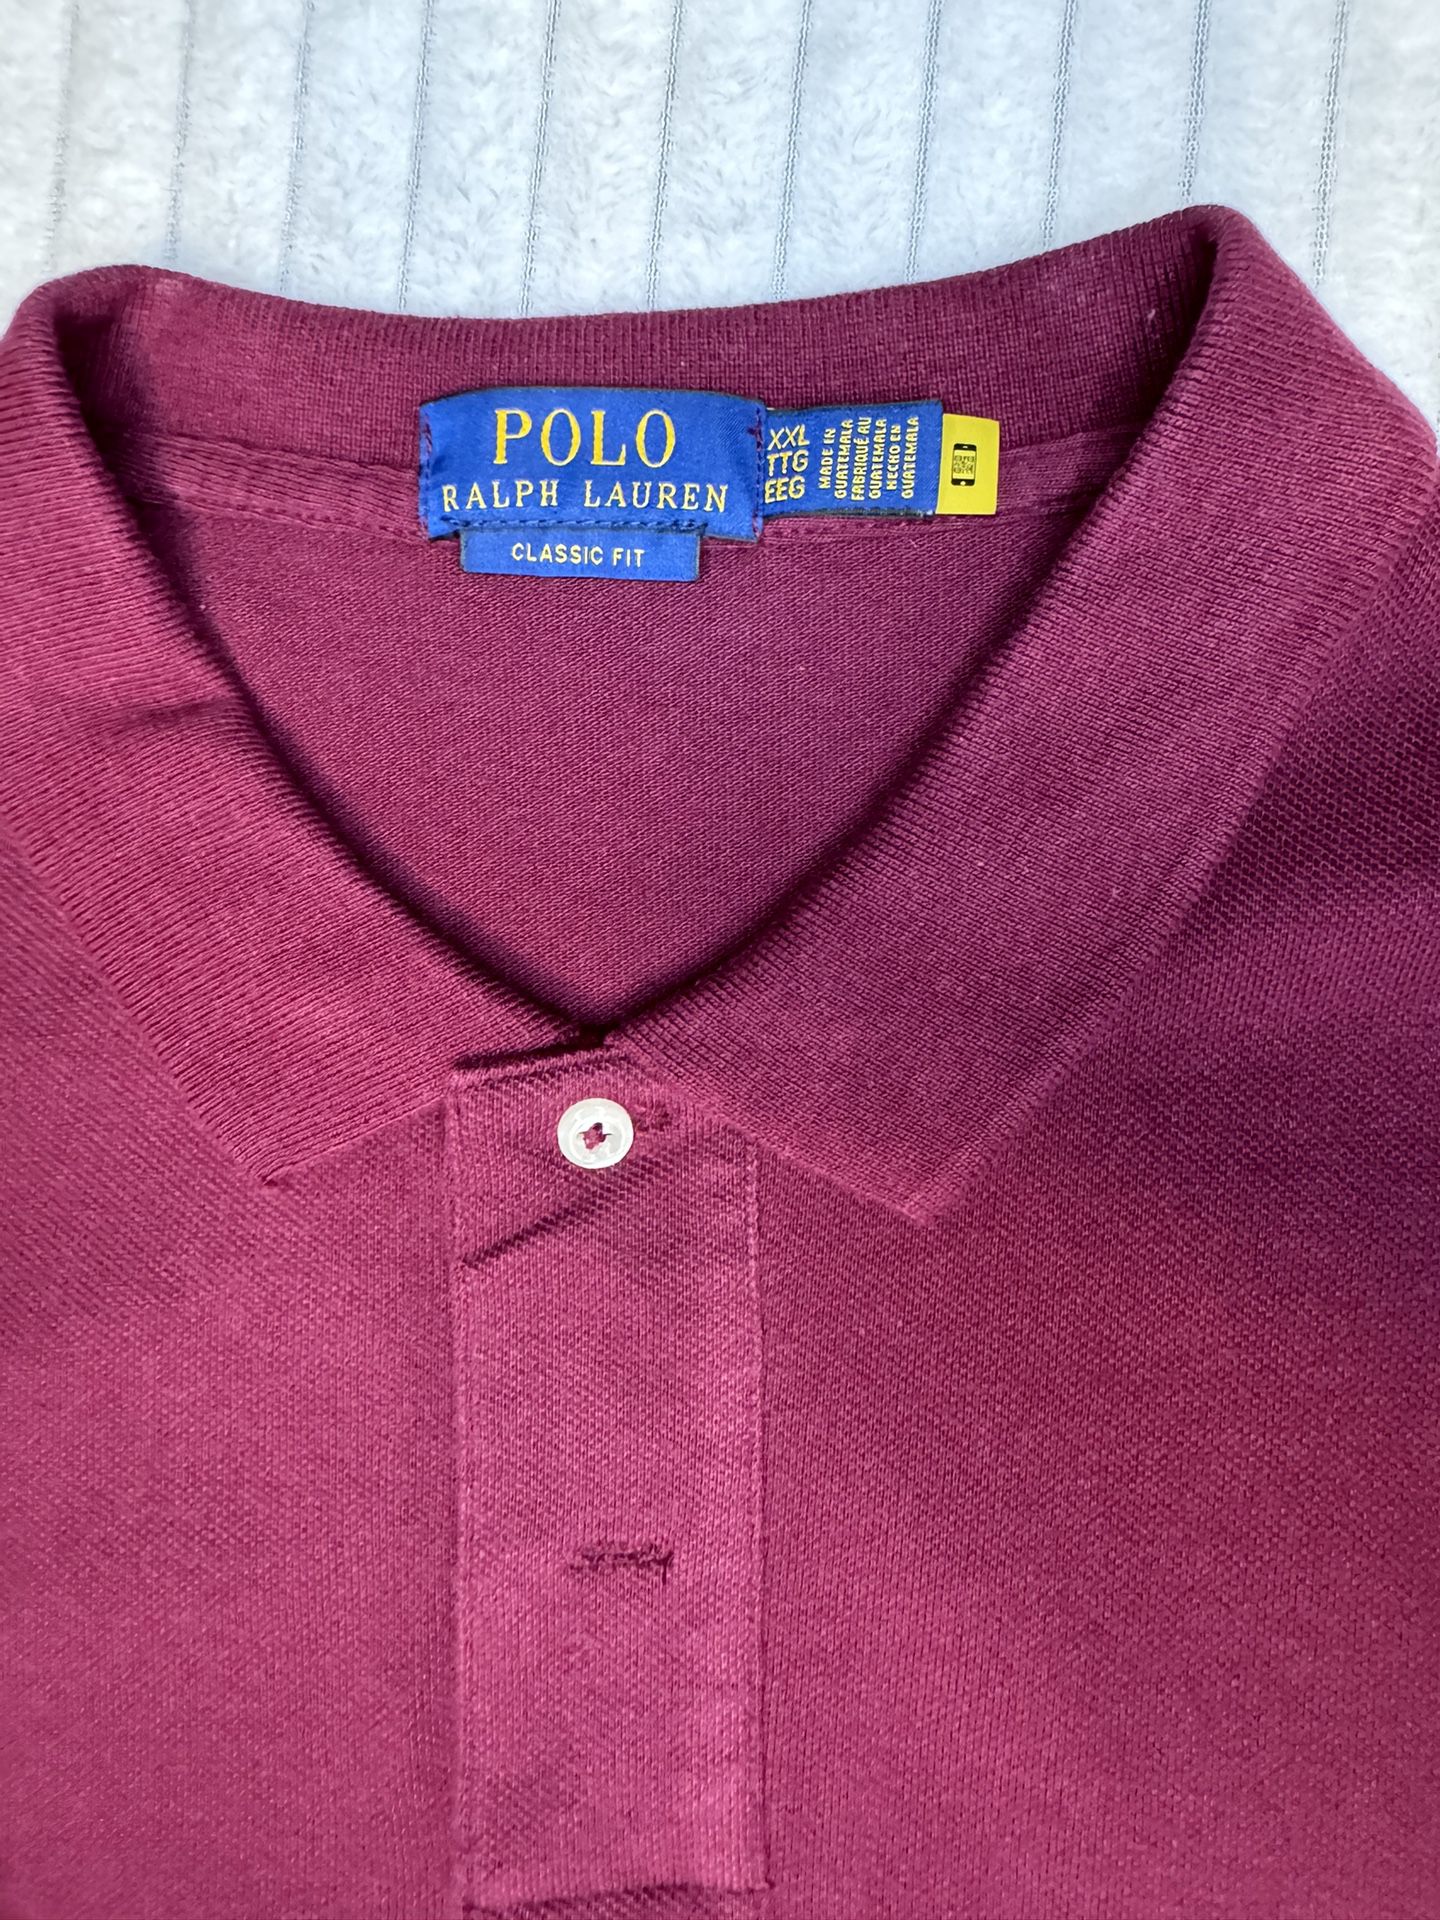 Polo Ralph Lauren Shirt XXL TTG